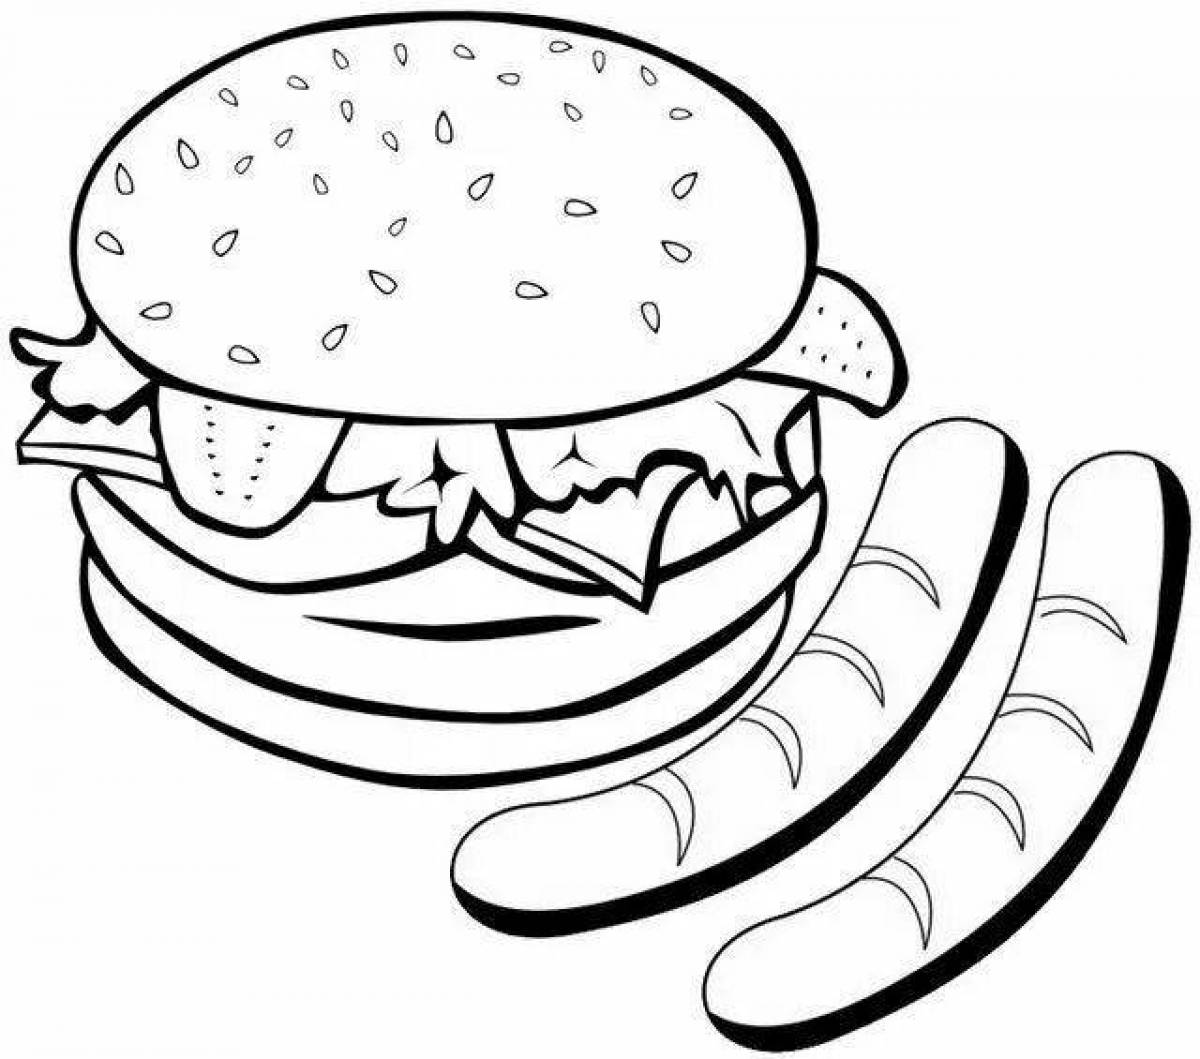 Magic hamburger coloring page